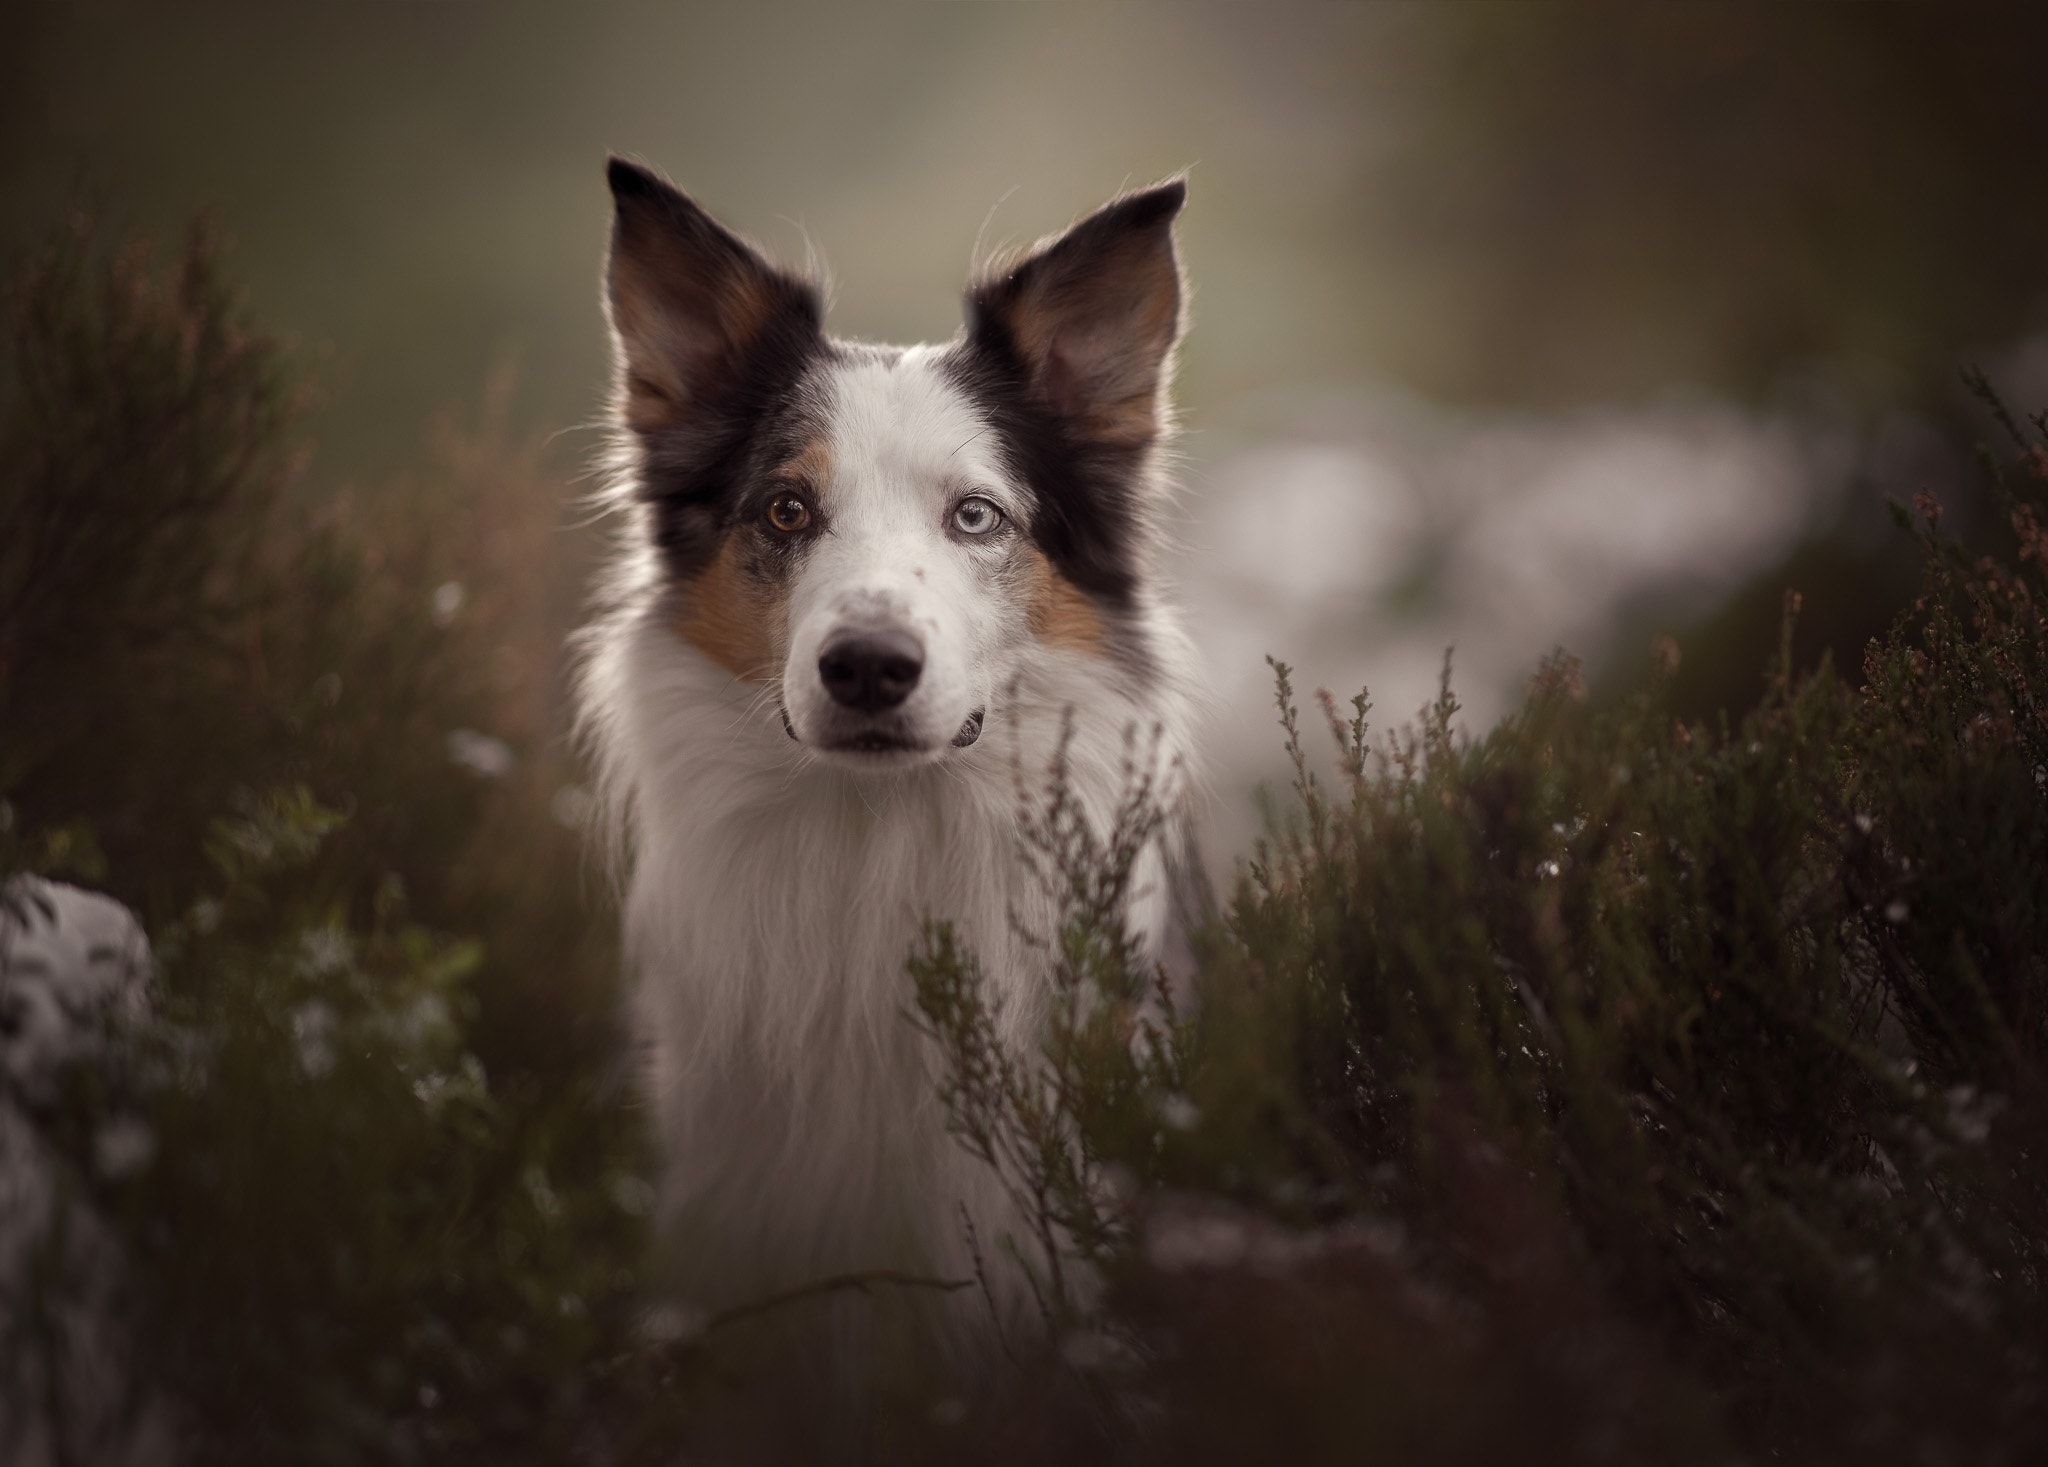 Untitled - | DOG PHOTO OUTDOOR | Pinterest | Dog and Animal